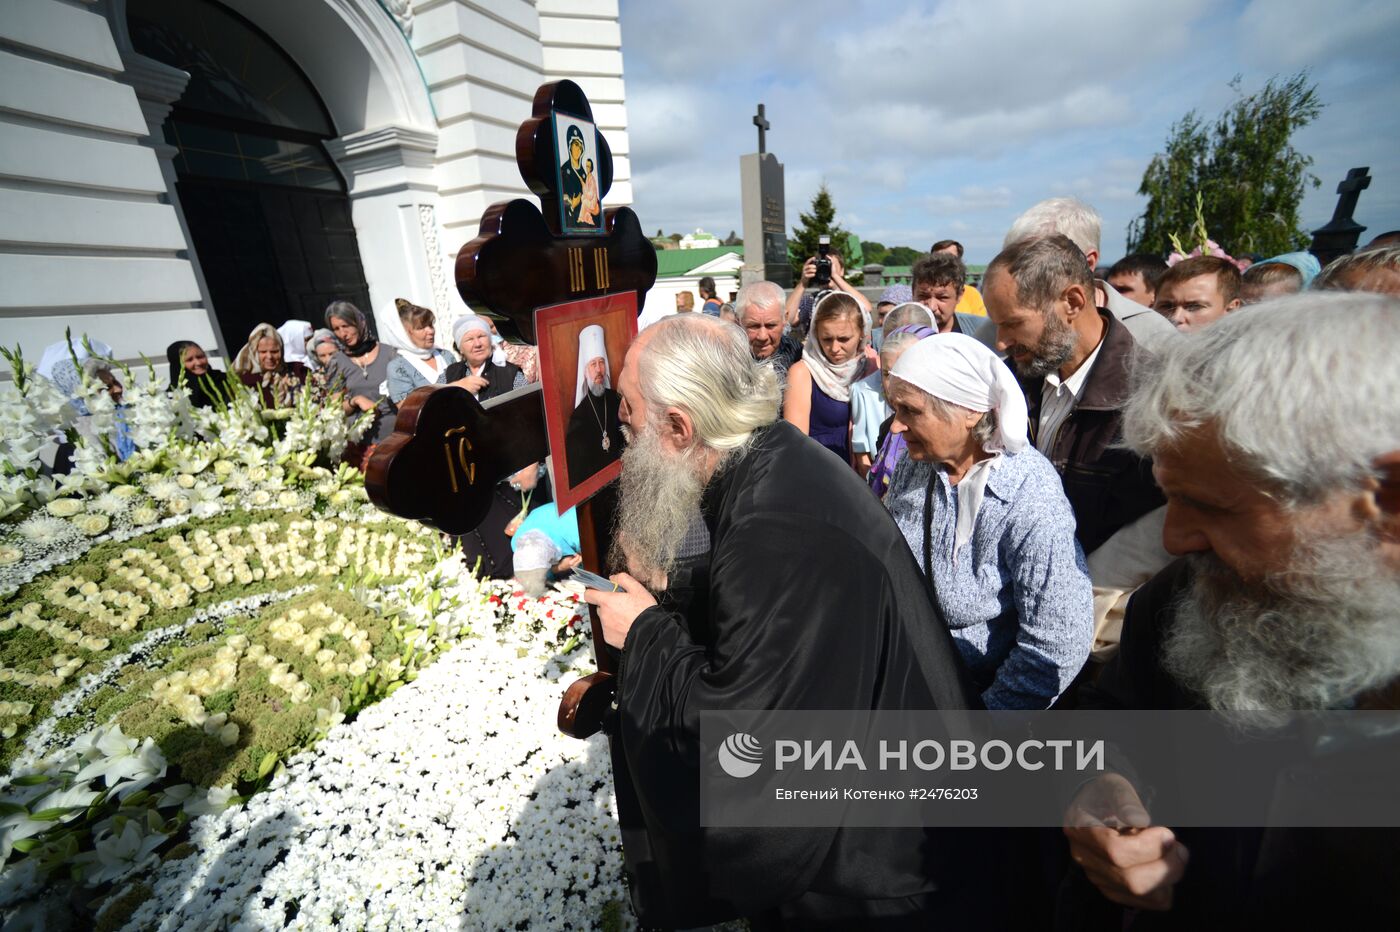 Предстоятелем Украинской православной церкви избран митрополит Онуфрий